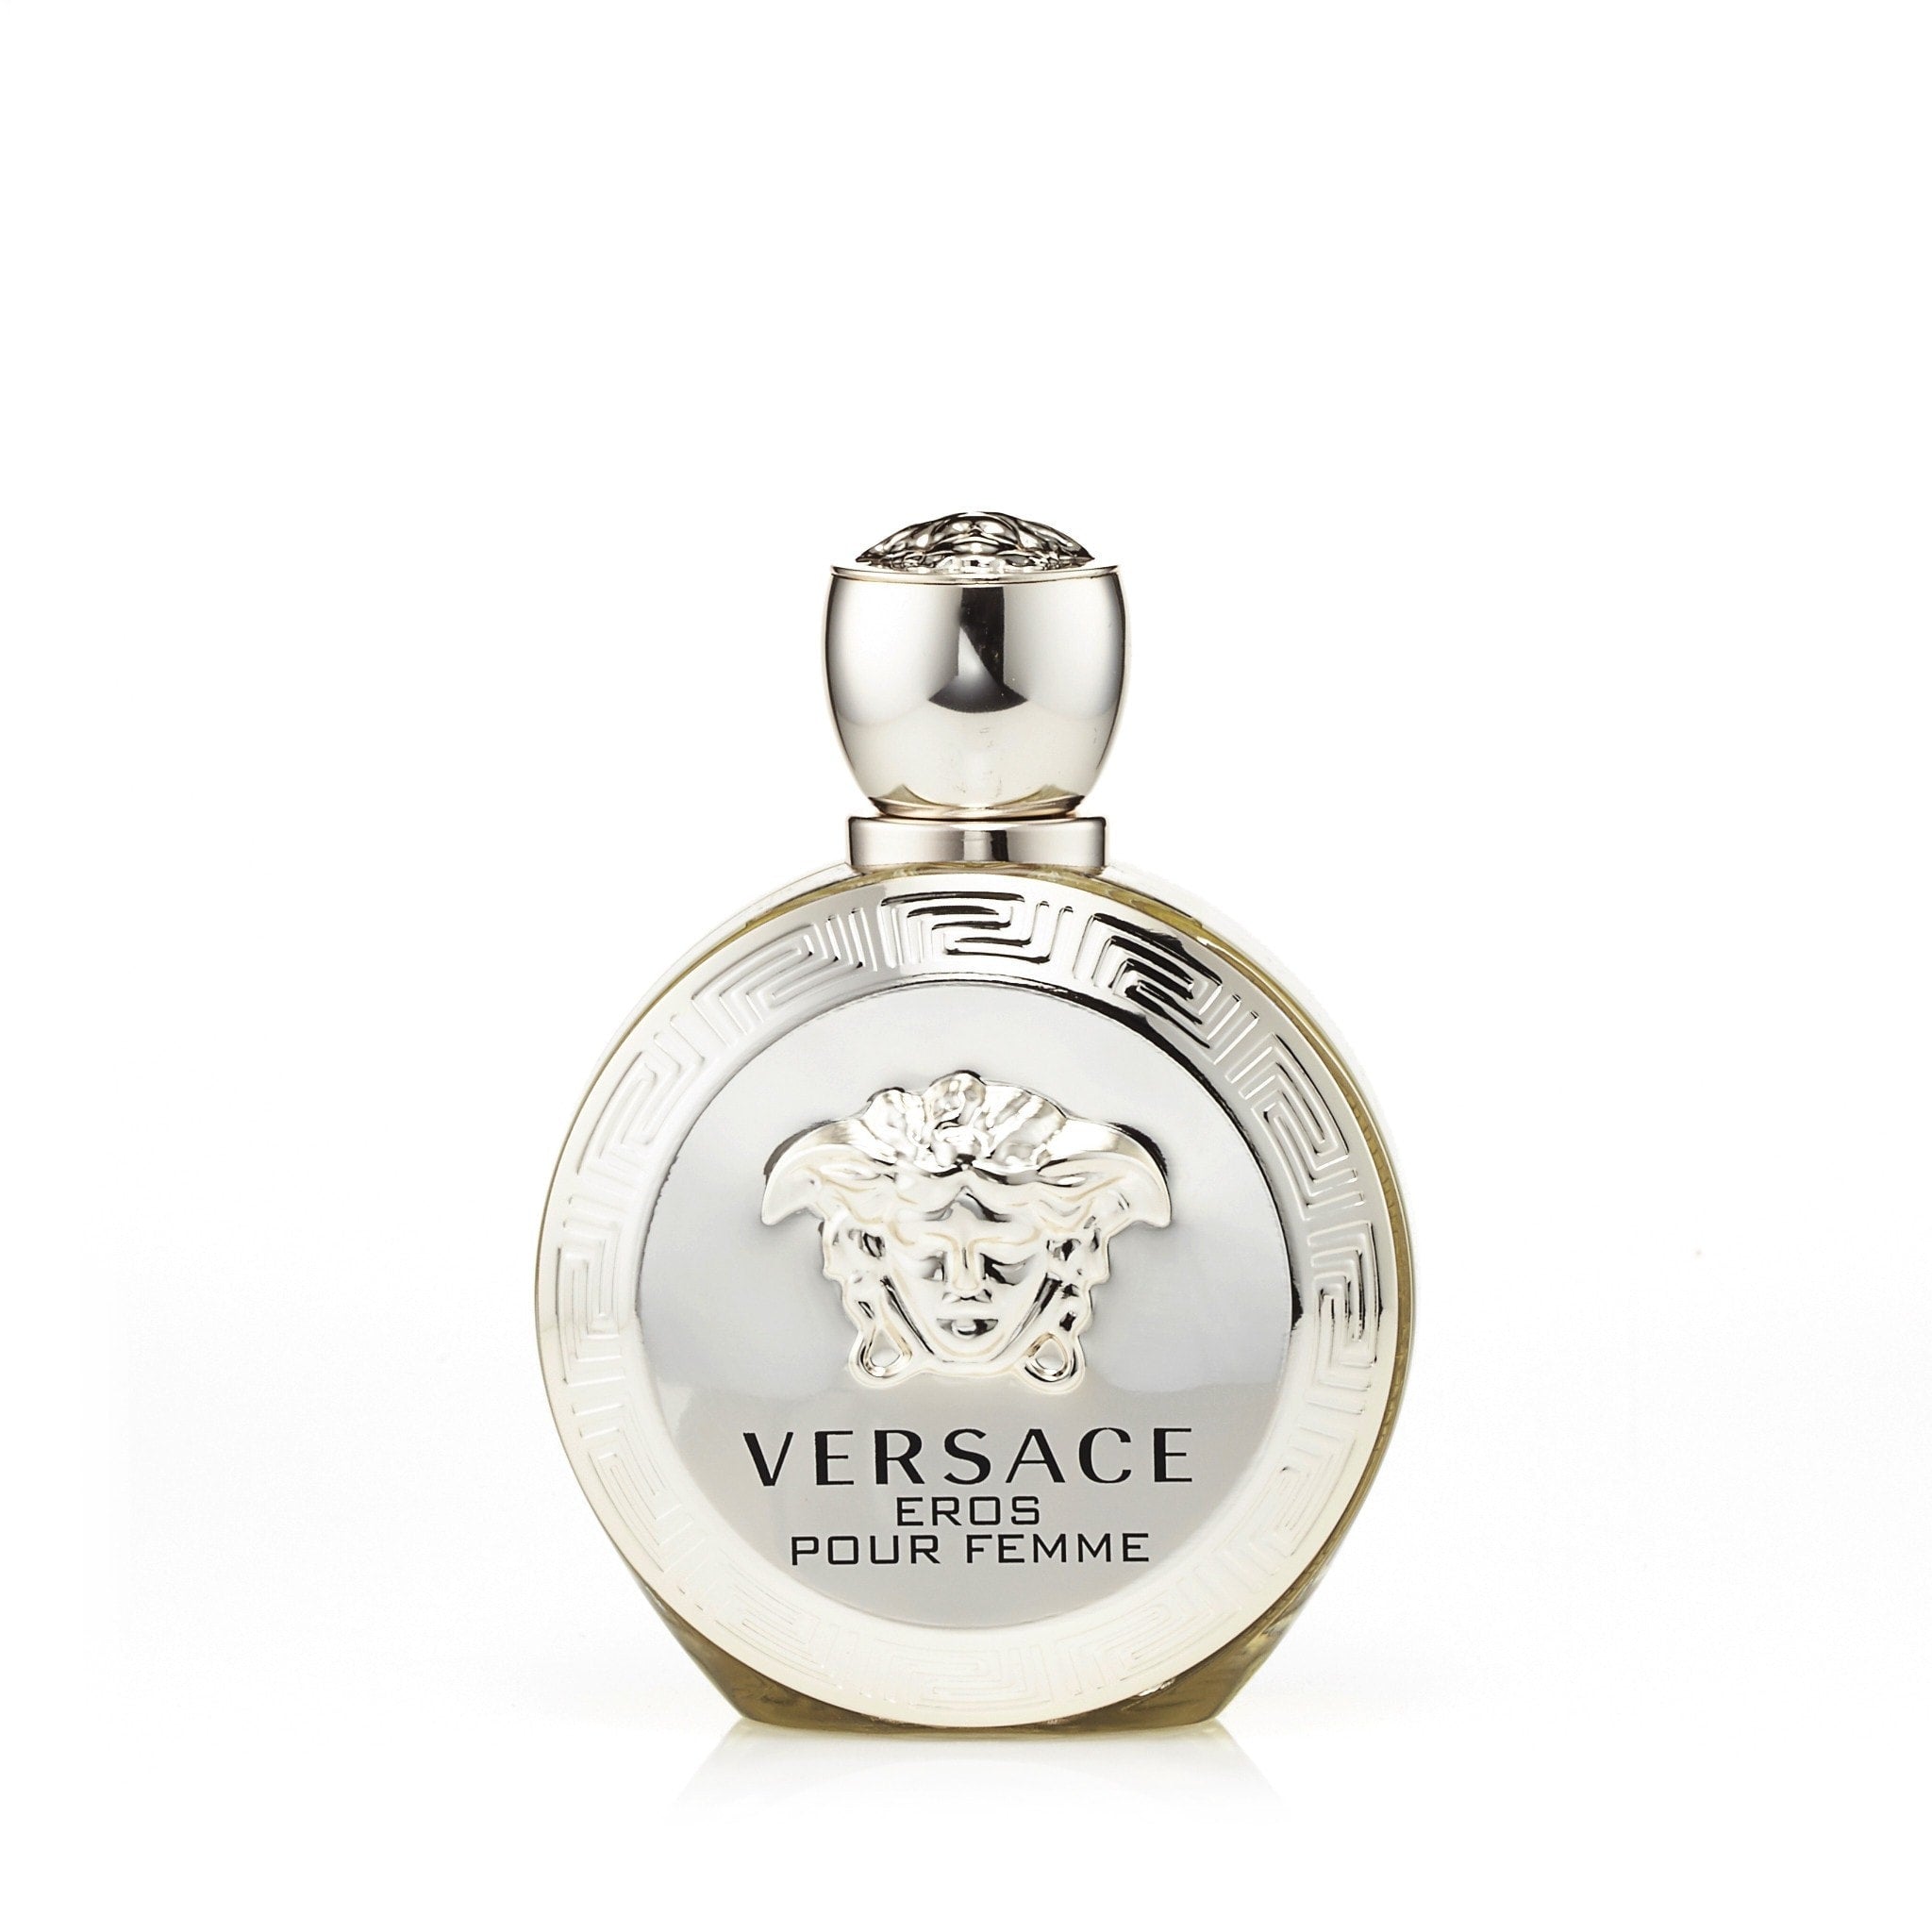 Eros Eau de Parfum Spray for Women by Versace Secondary image